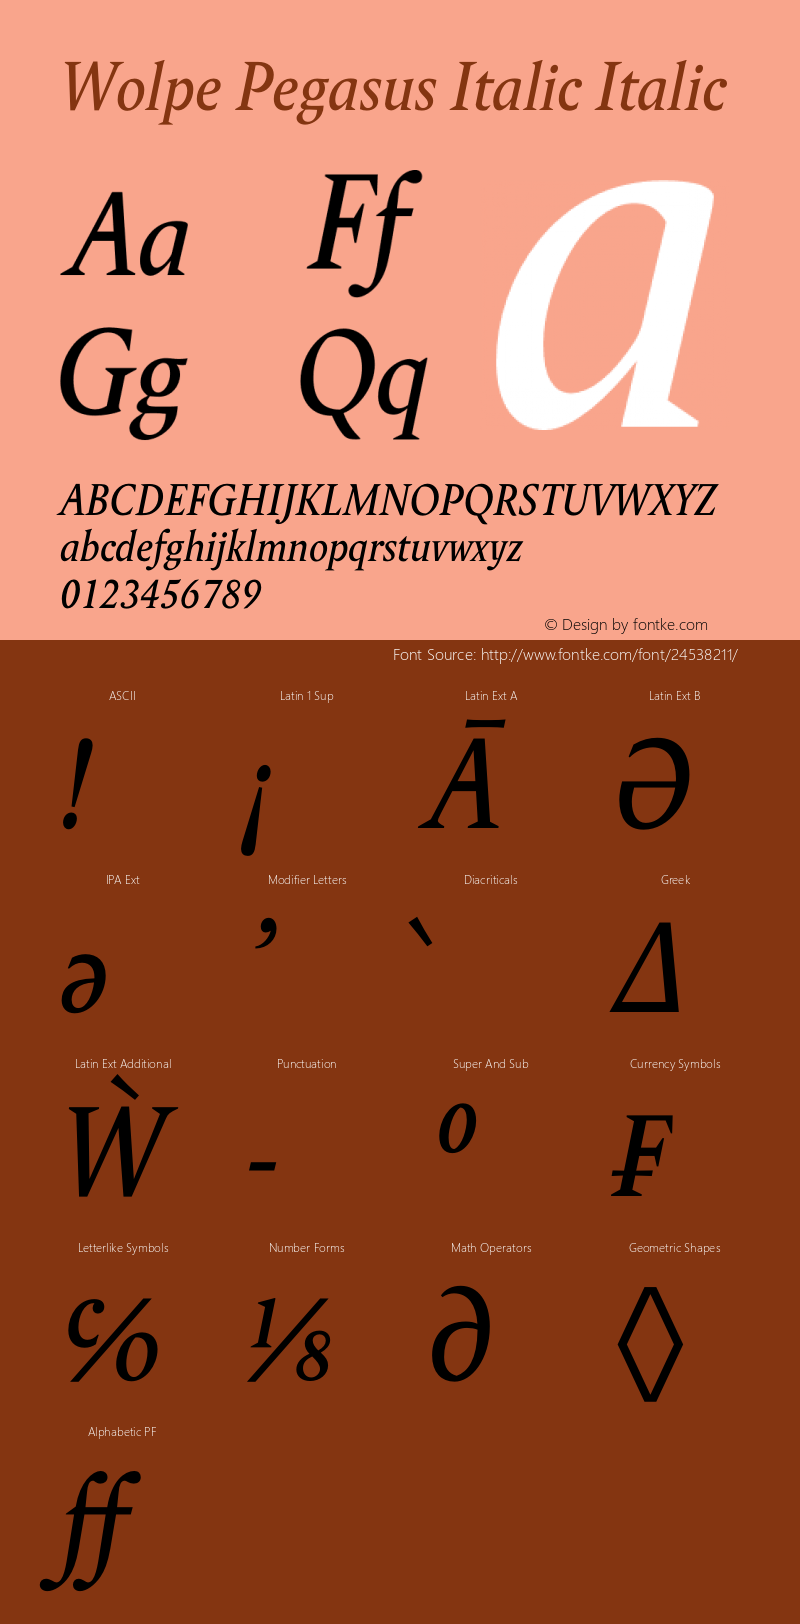 Wolpe Pegasus Italic Version 1.00图片样张